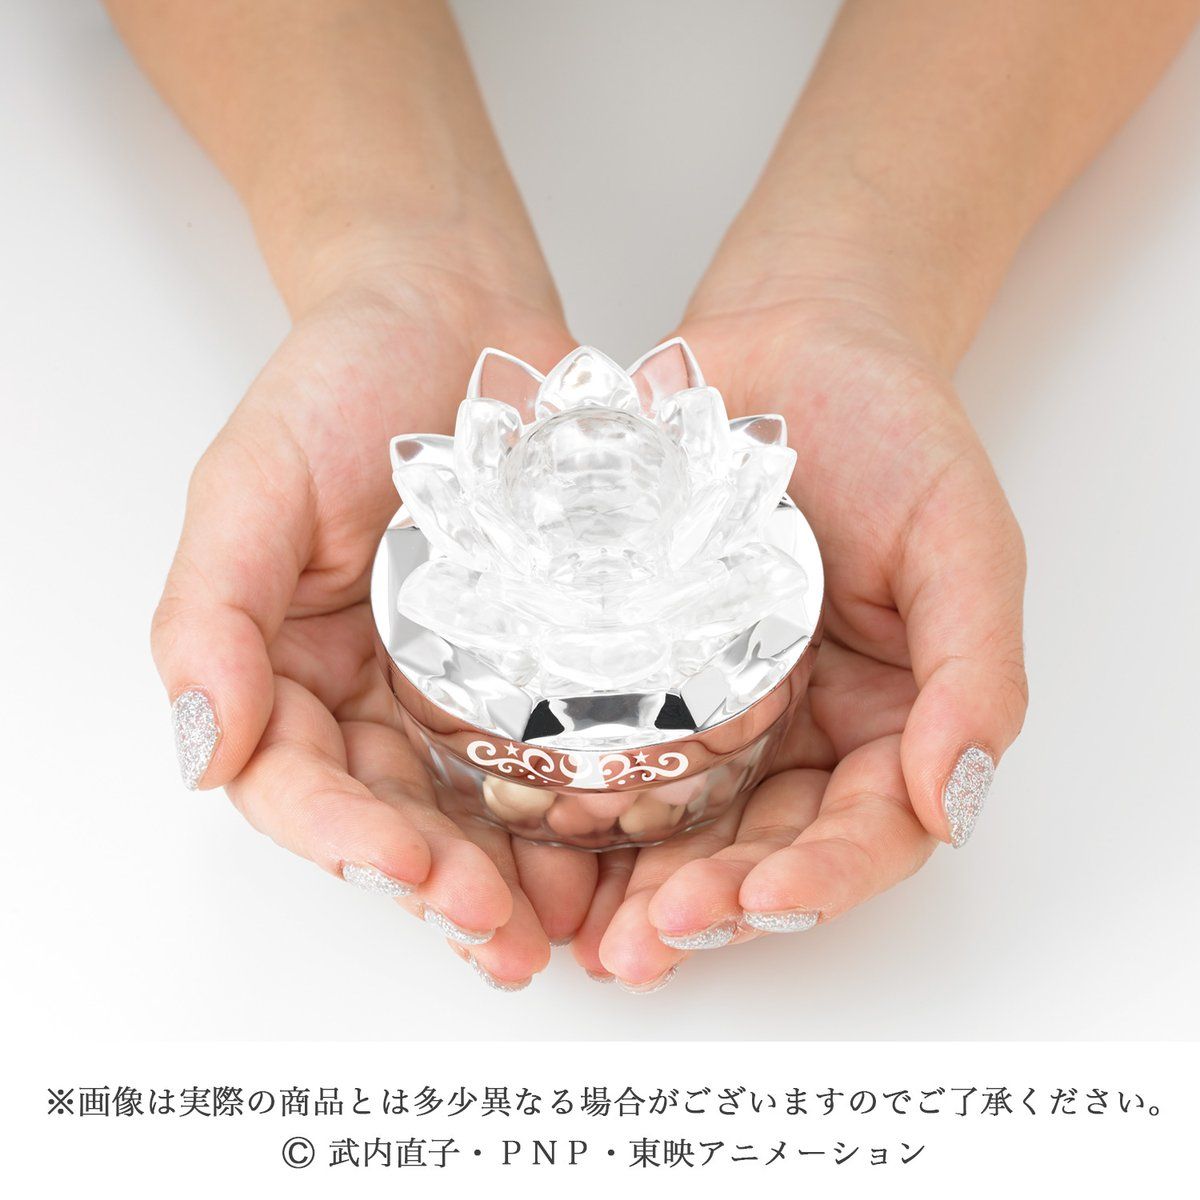 【販売終了品】 セーラームーン 幻の銀水晶 フェイスパウダー